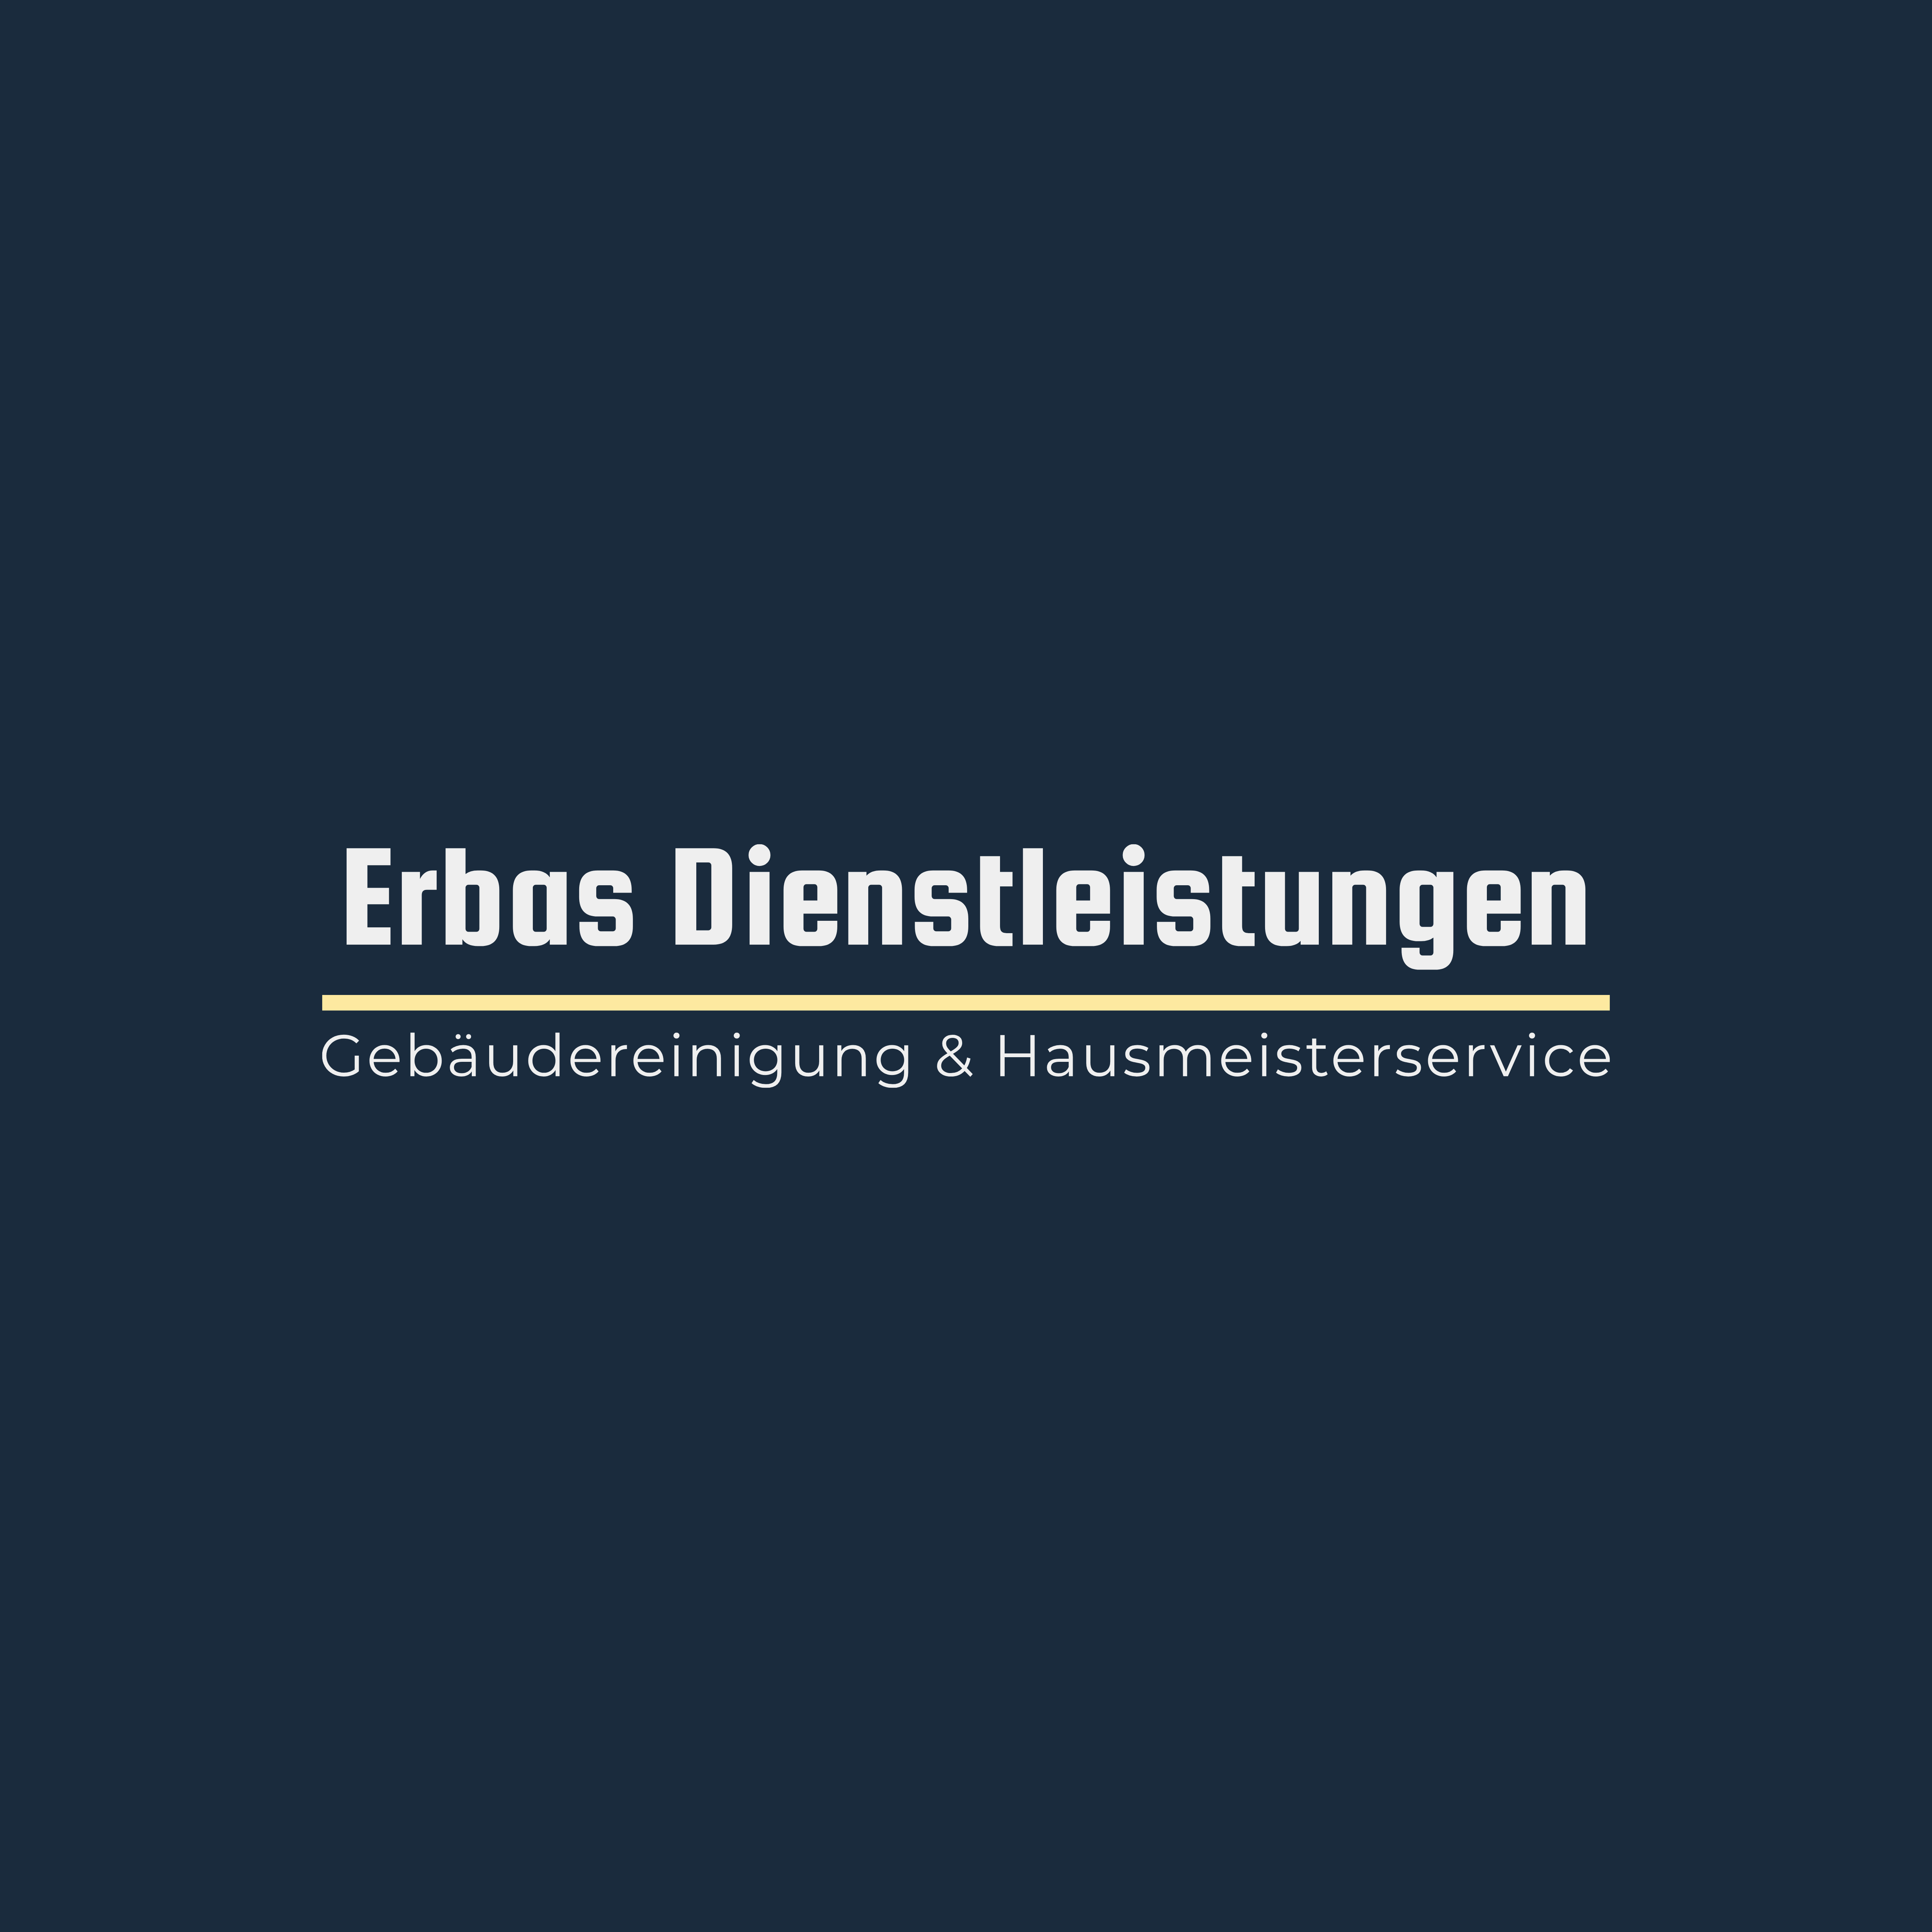 Erbas Dienstleistungen in Mudersbach an der Sieg - Logo